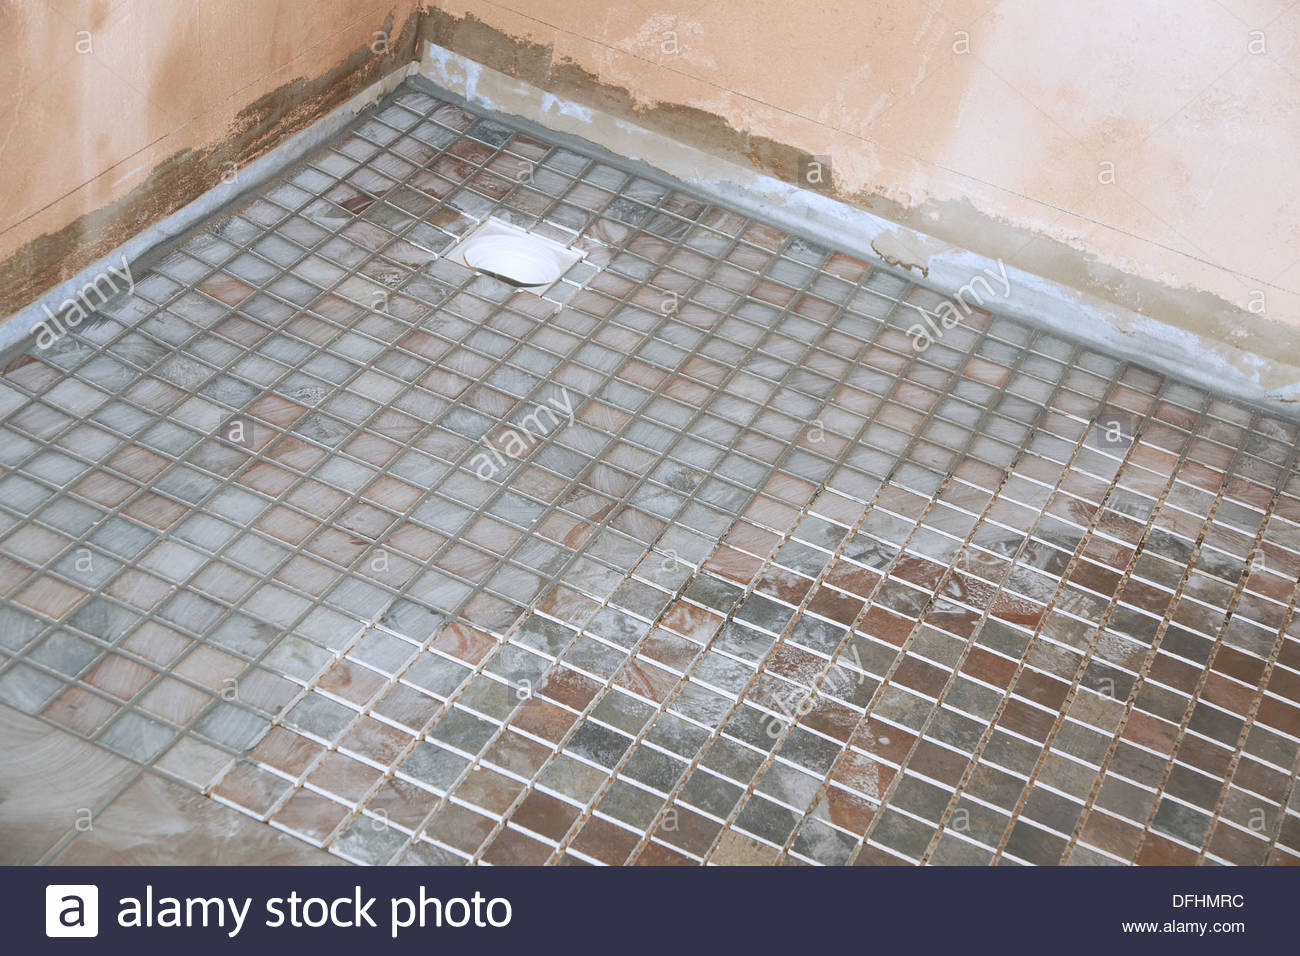 Non Slip Bathroom Tiles
 Non slip tiles used for the flooring in a wet room shower